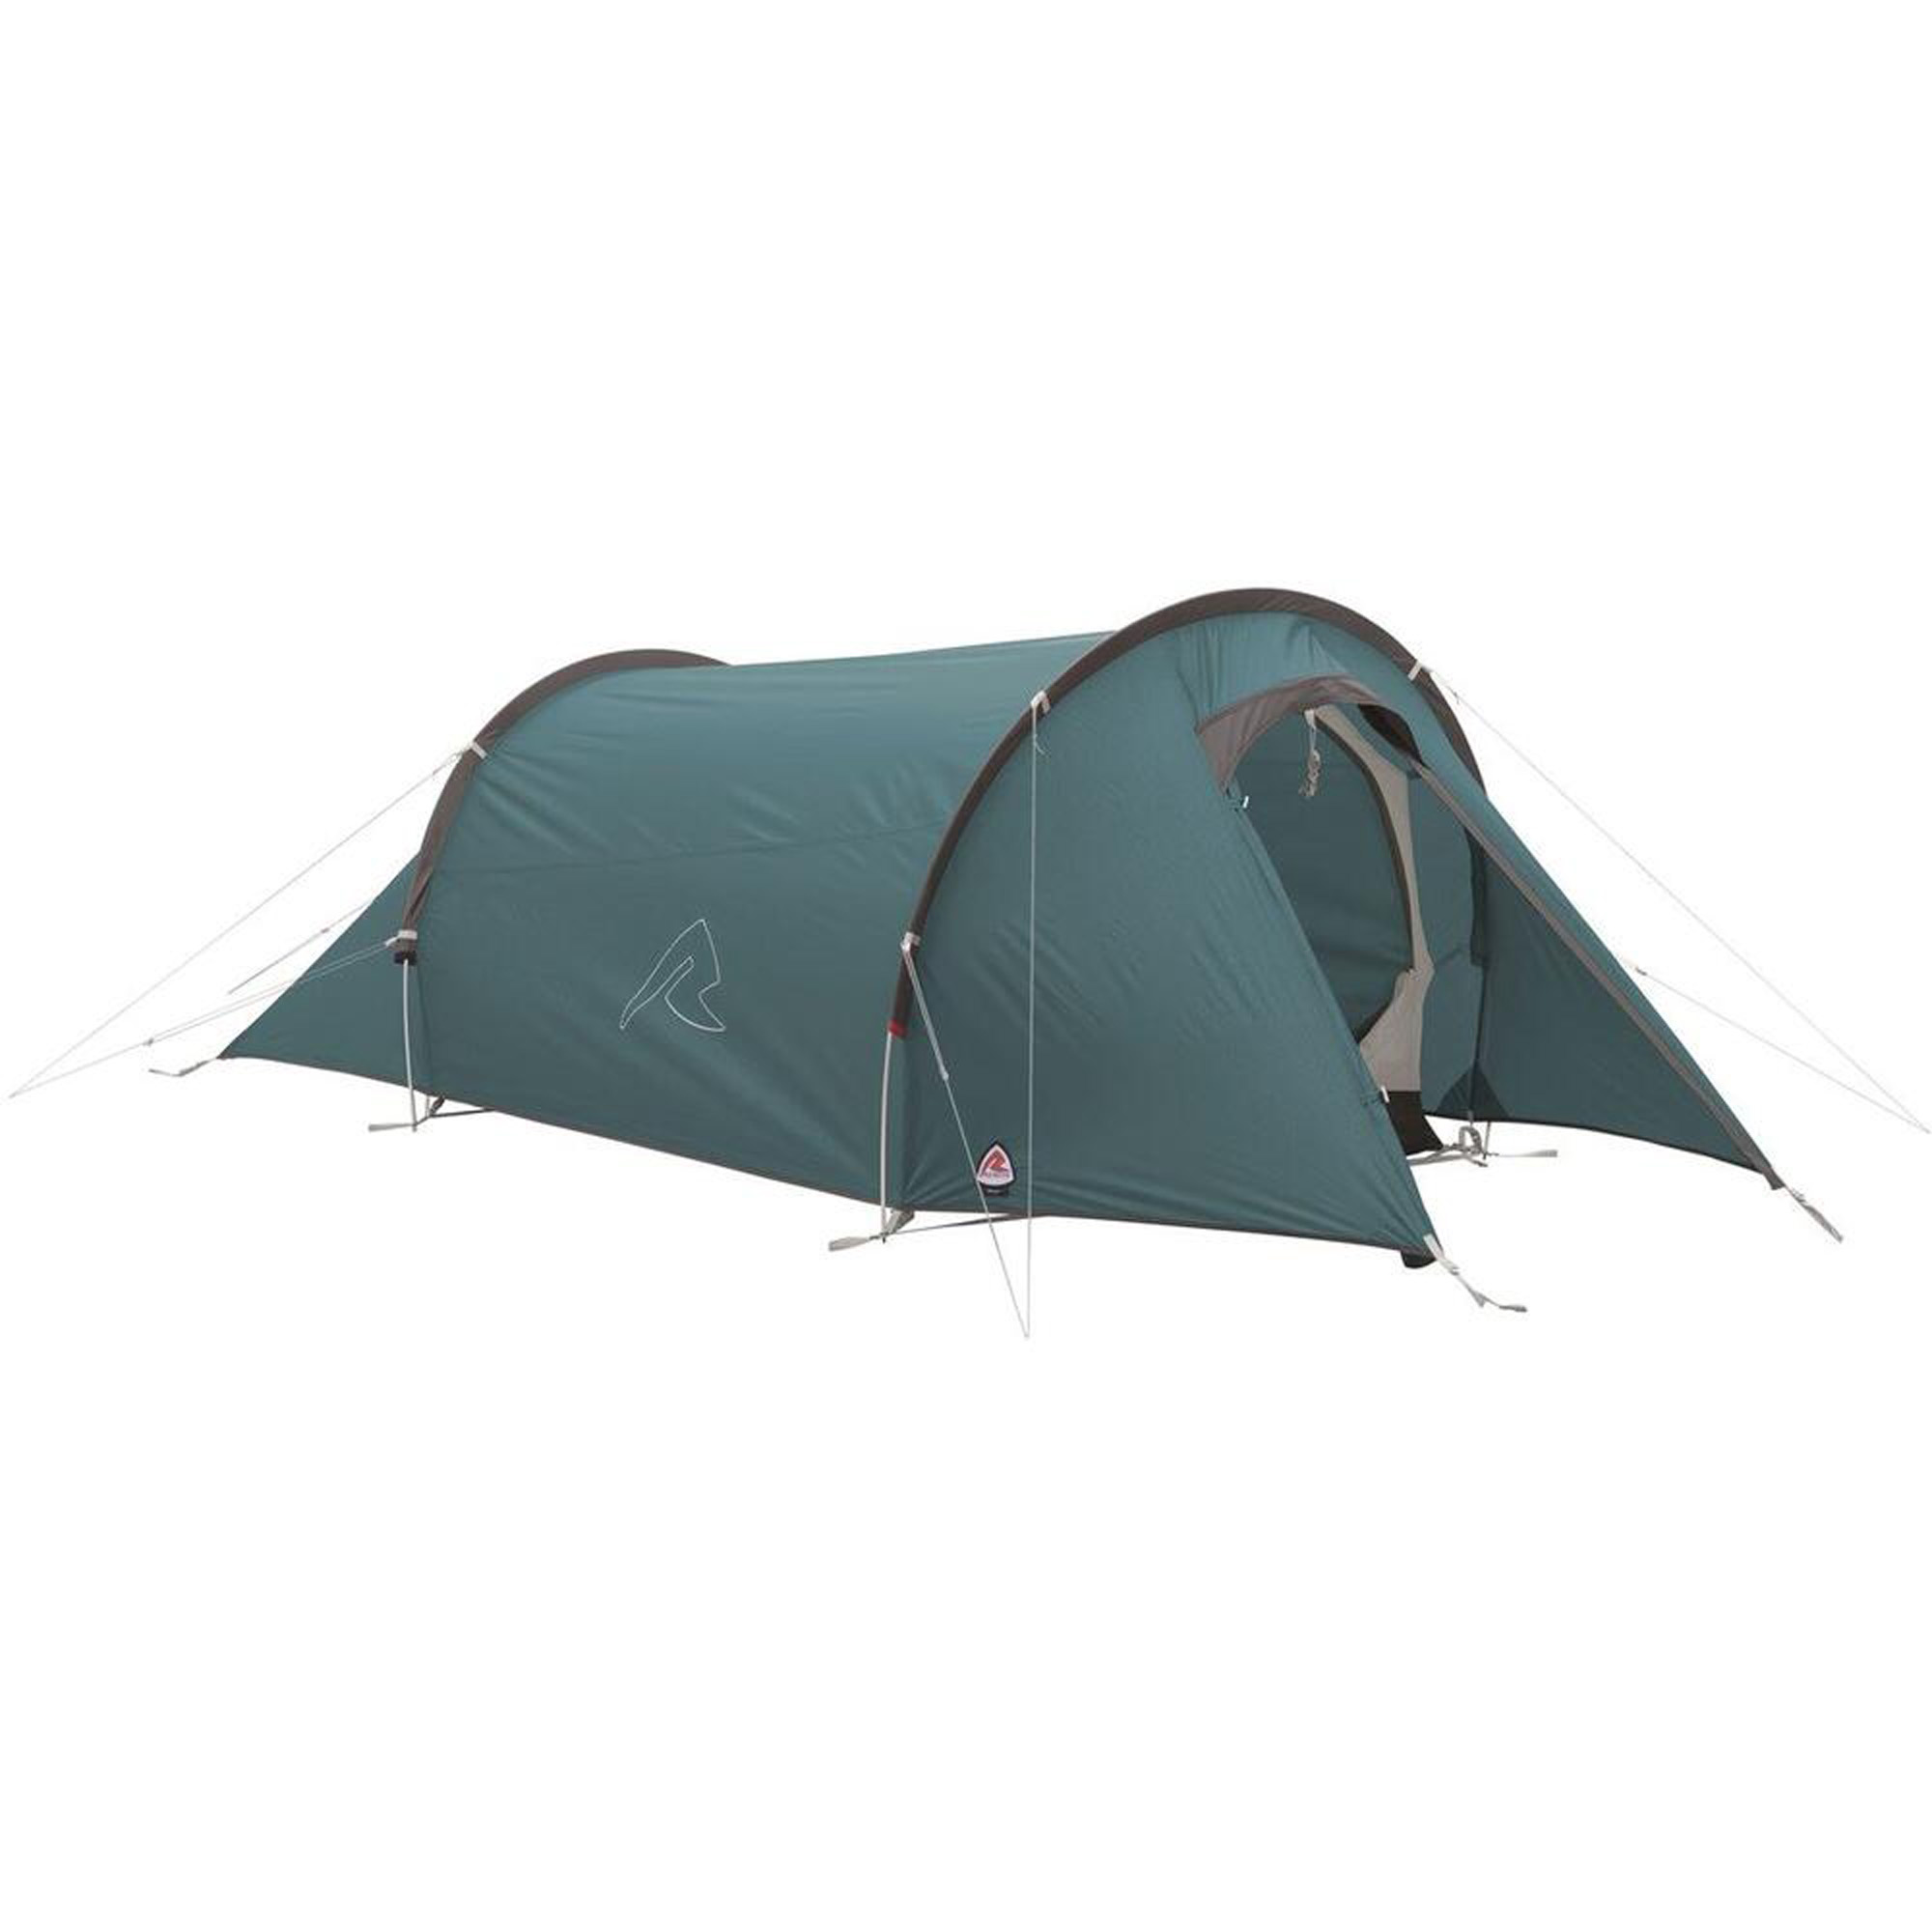 Robens Arch 2 Lightweight Trekking Tent